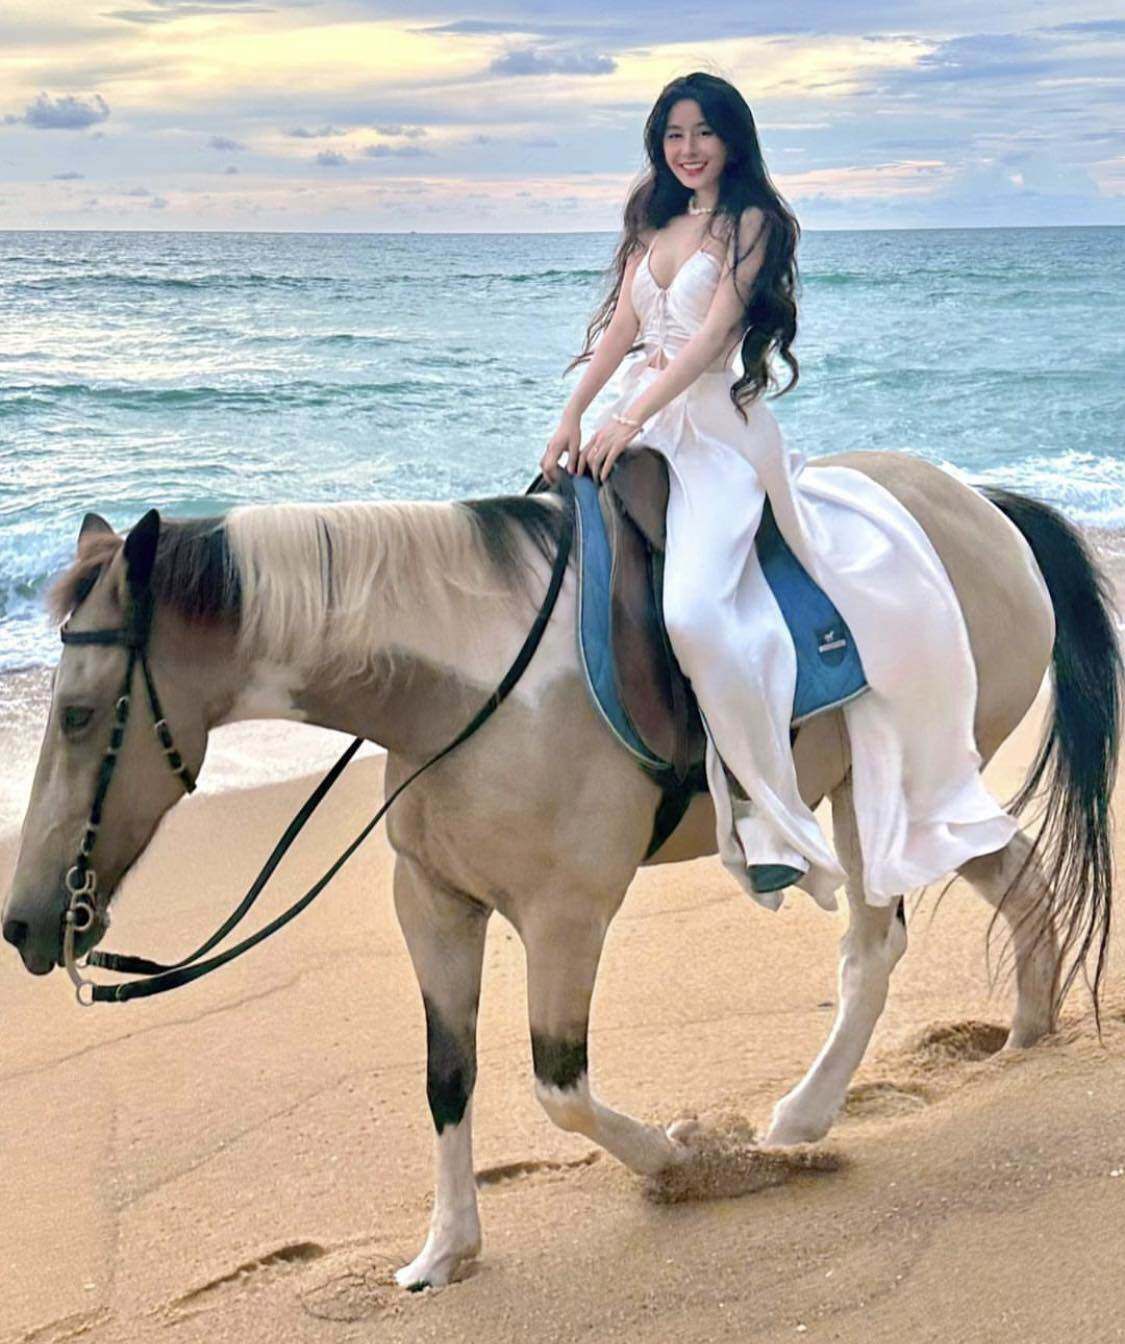 Trend cưỡi ngựa đi dạo biển: "nữ sinh hot nhất Sài thành" mặc quần lụa, áo bay trong gió